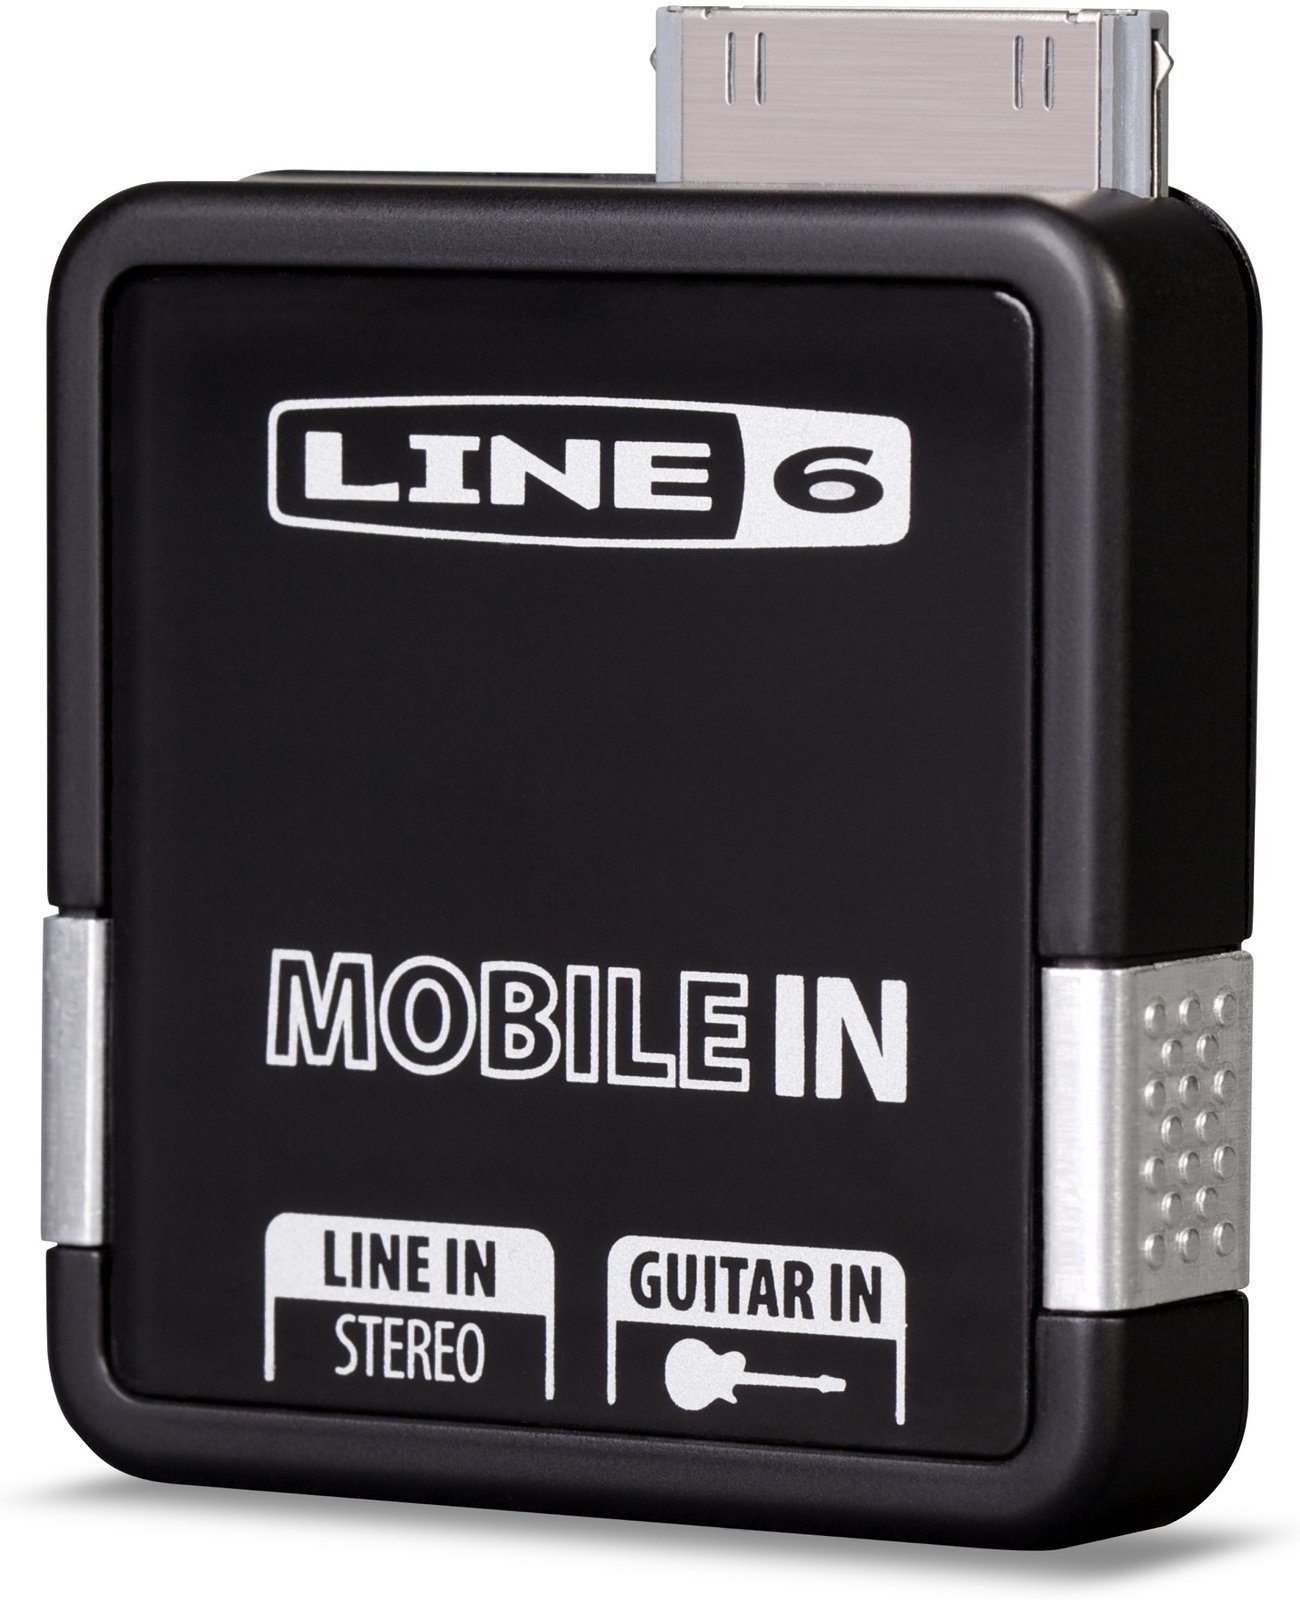 Studio-udstyr Line6 Mobile In